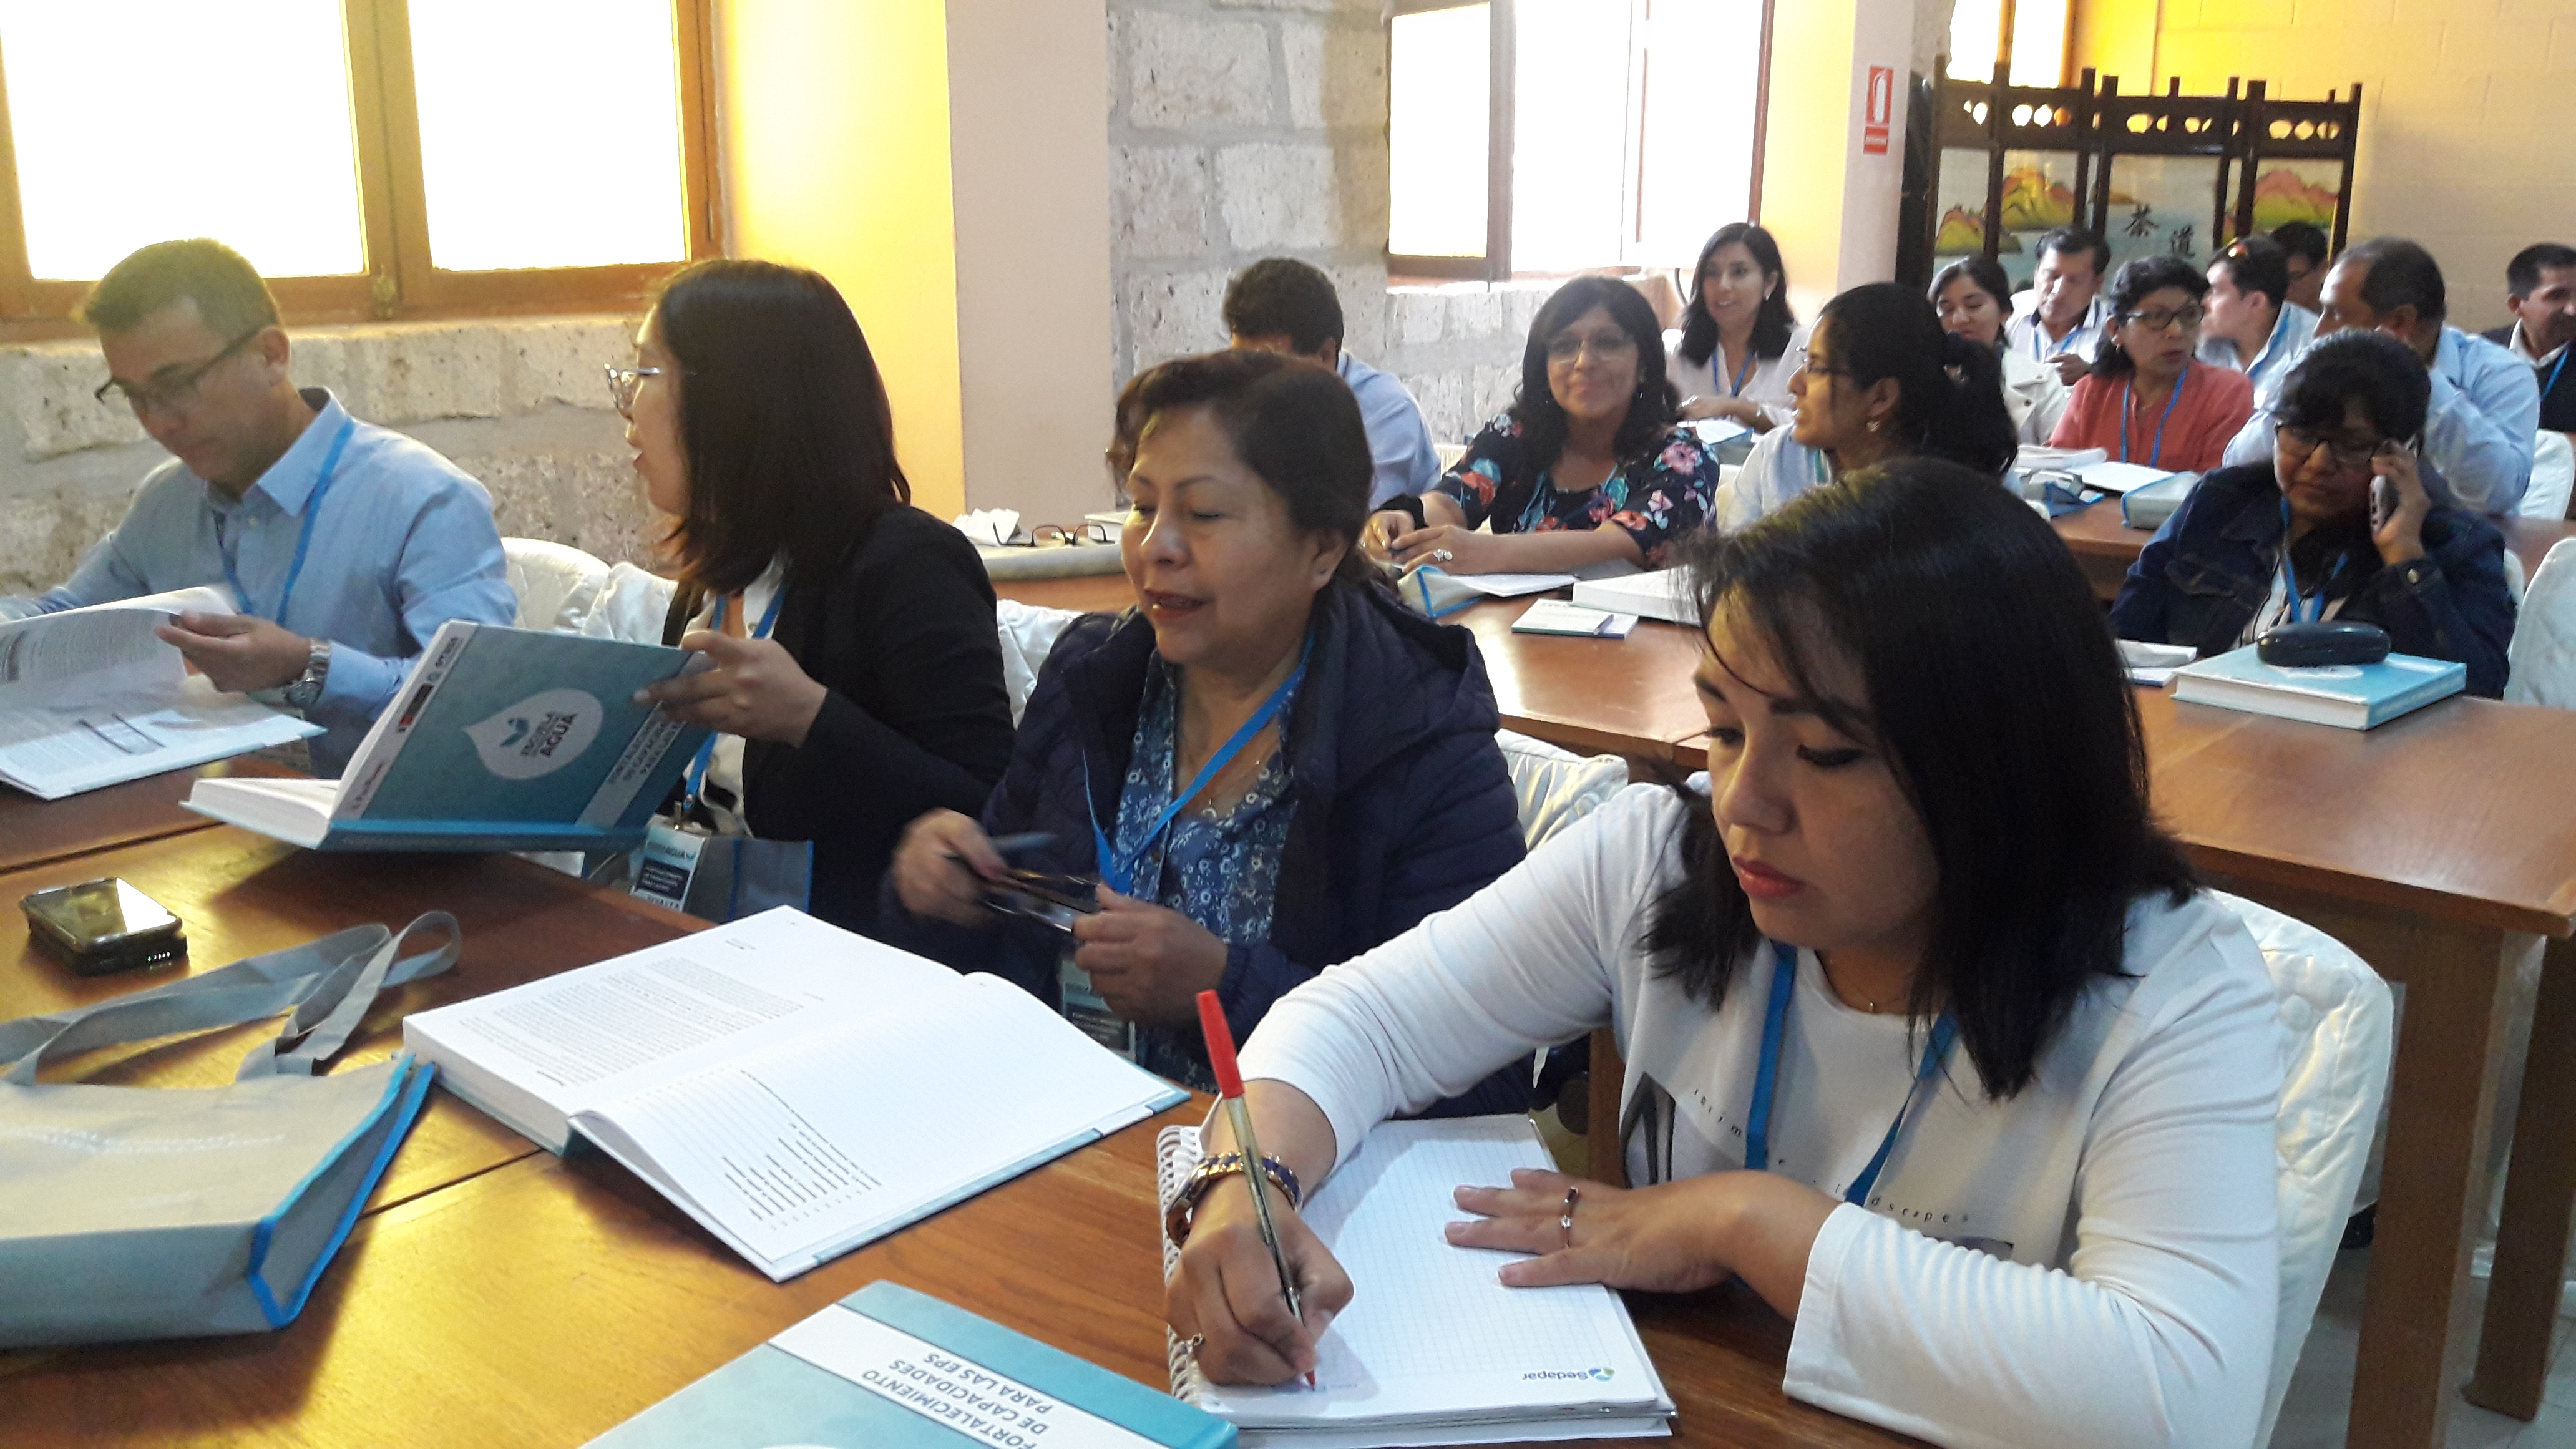 Se inicia “Escuela de Gestión del Agua” en Moquegua para capacitar a trabajadores de 4 EPS